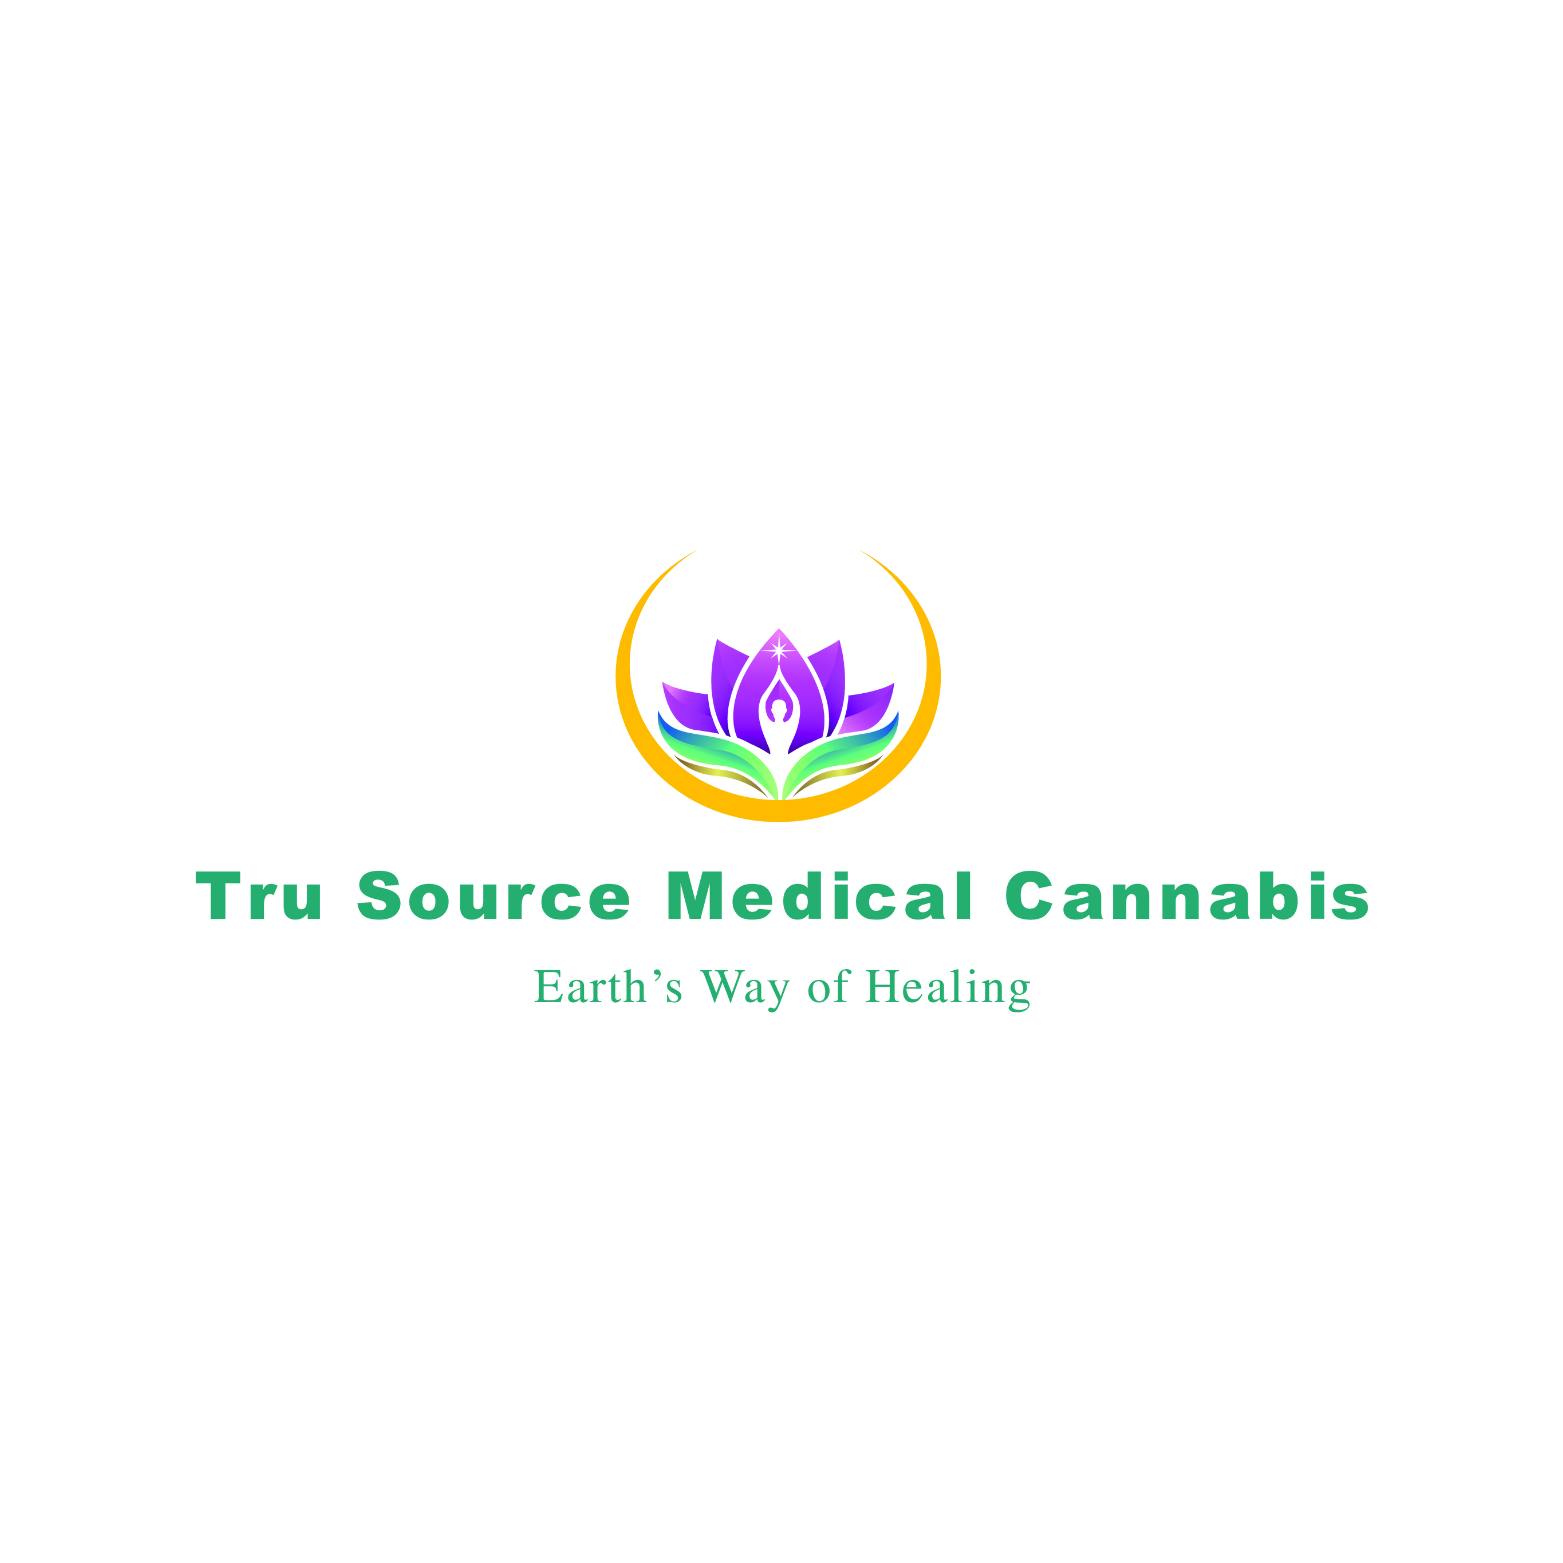 Tru Source Medical Cannabis logo